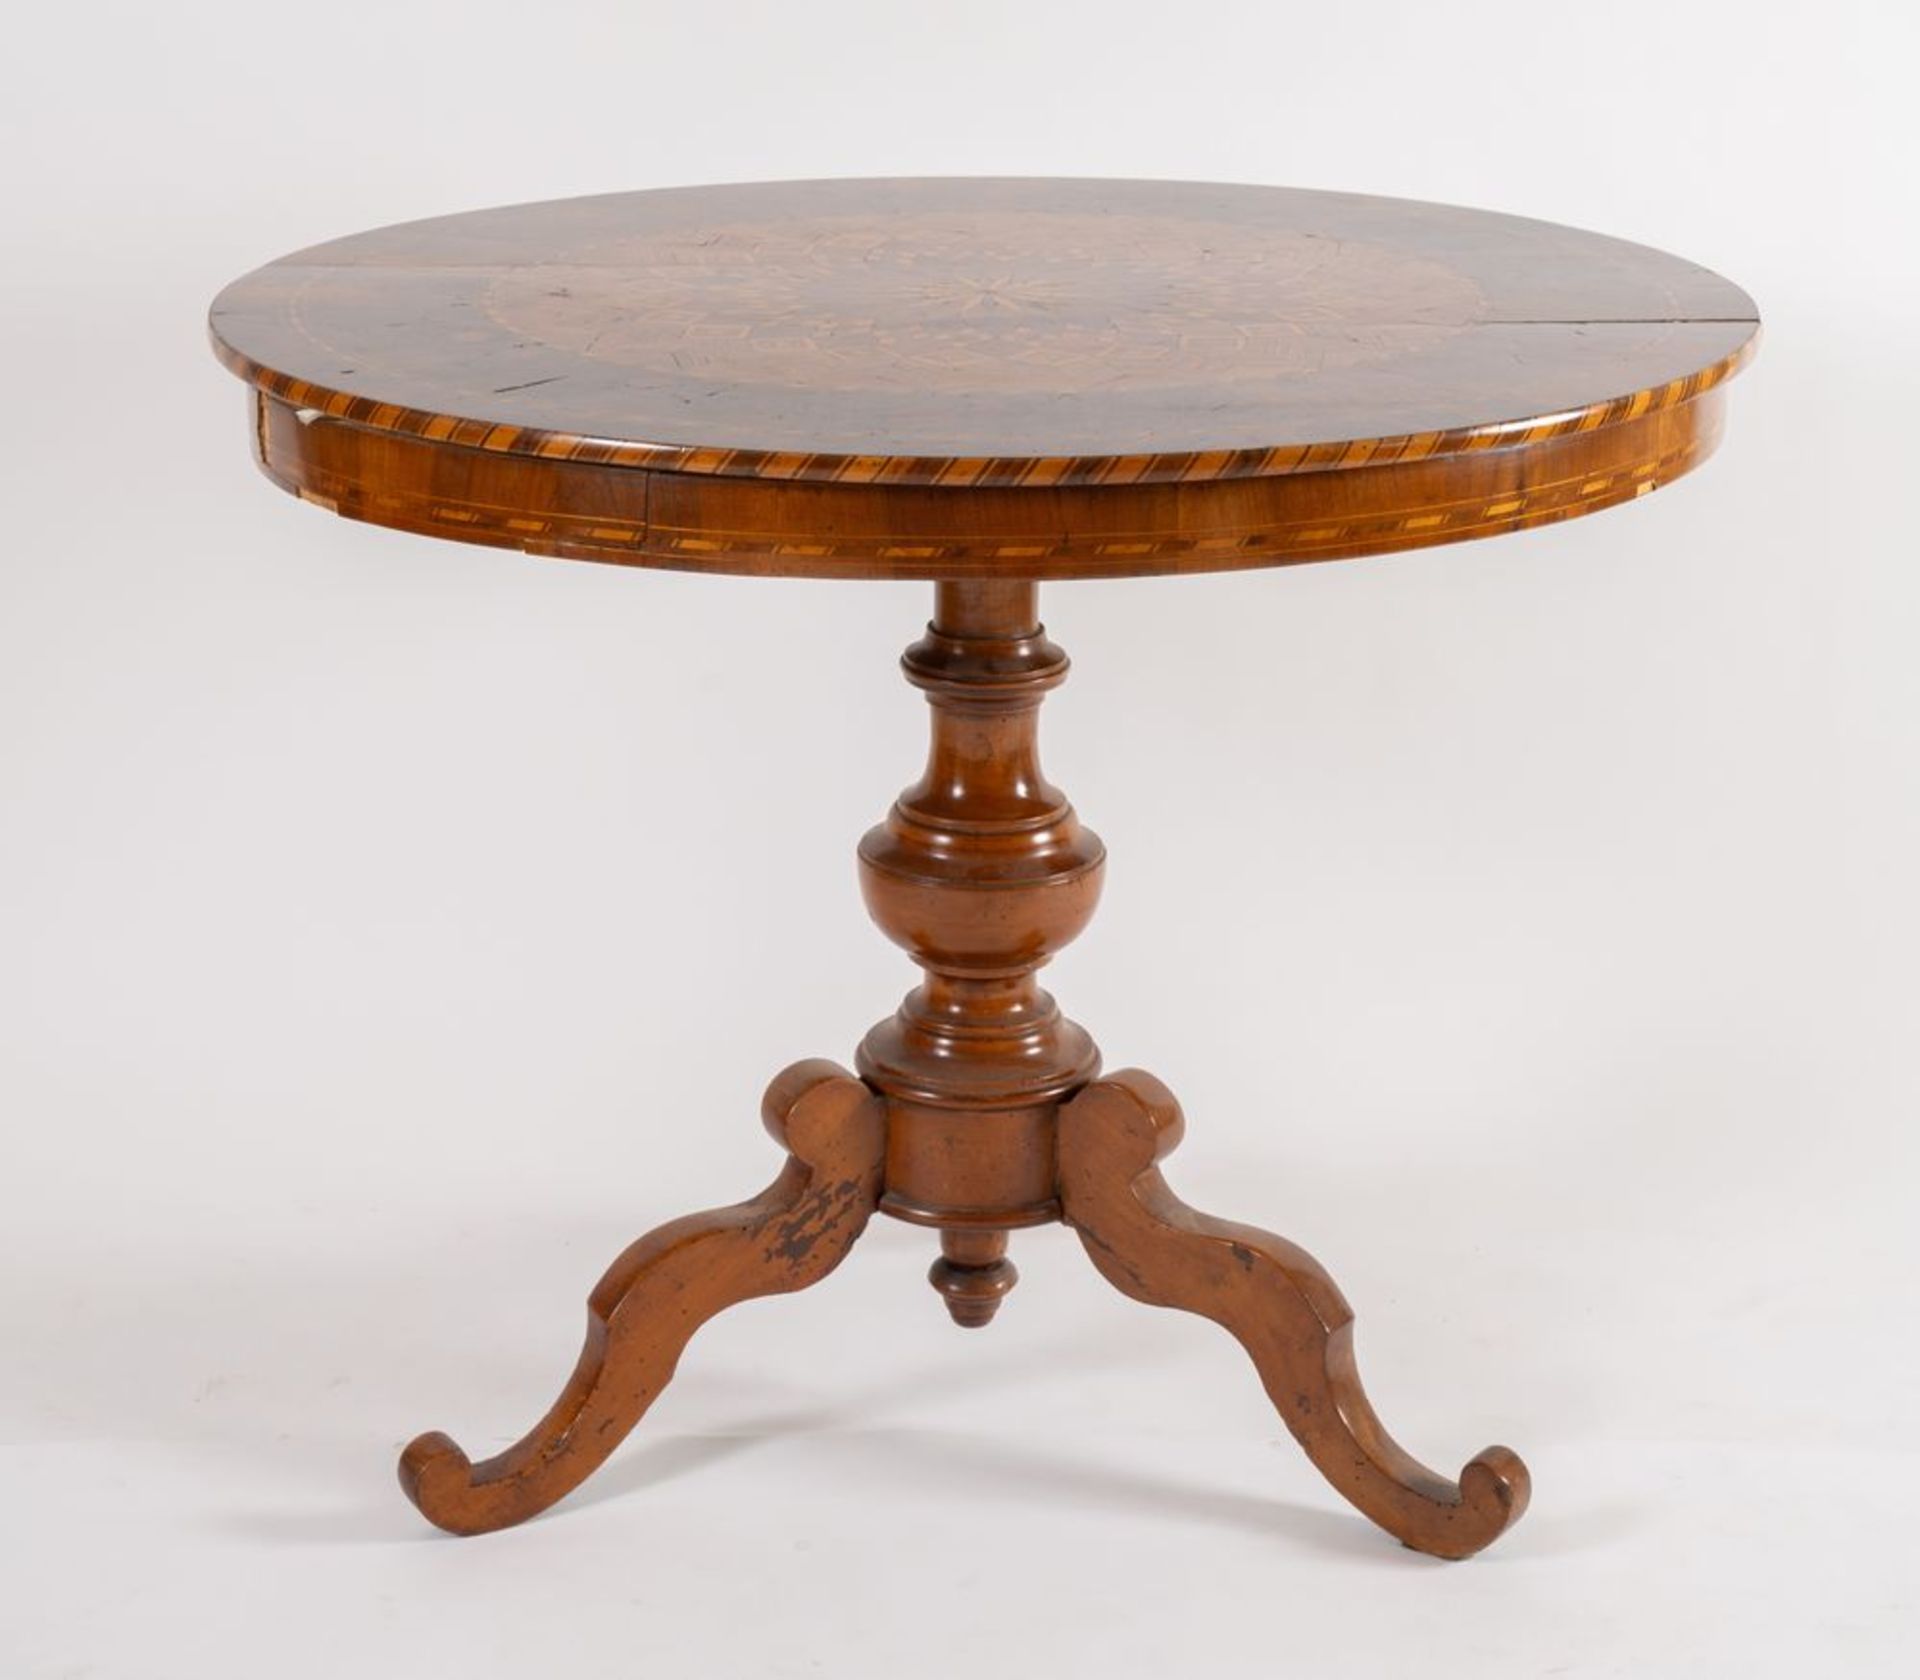 Tavolo tondo lastronato in legno di noce, acero e ciliegio, con motivi geometrici concentrici. Soste - Bild 3 aus 4